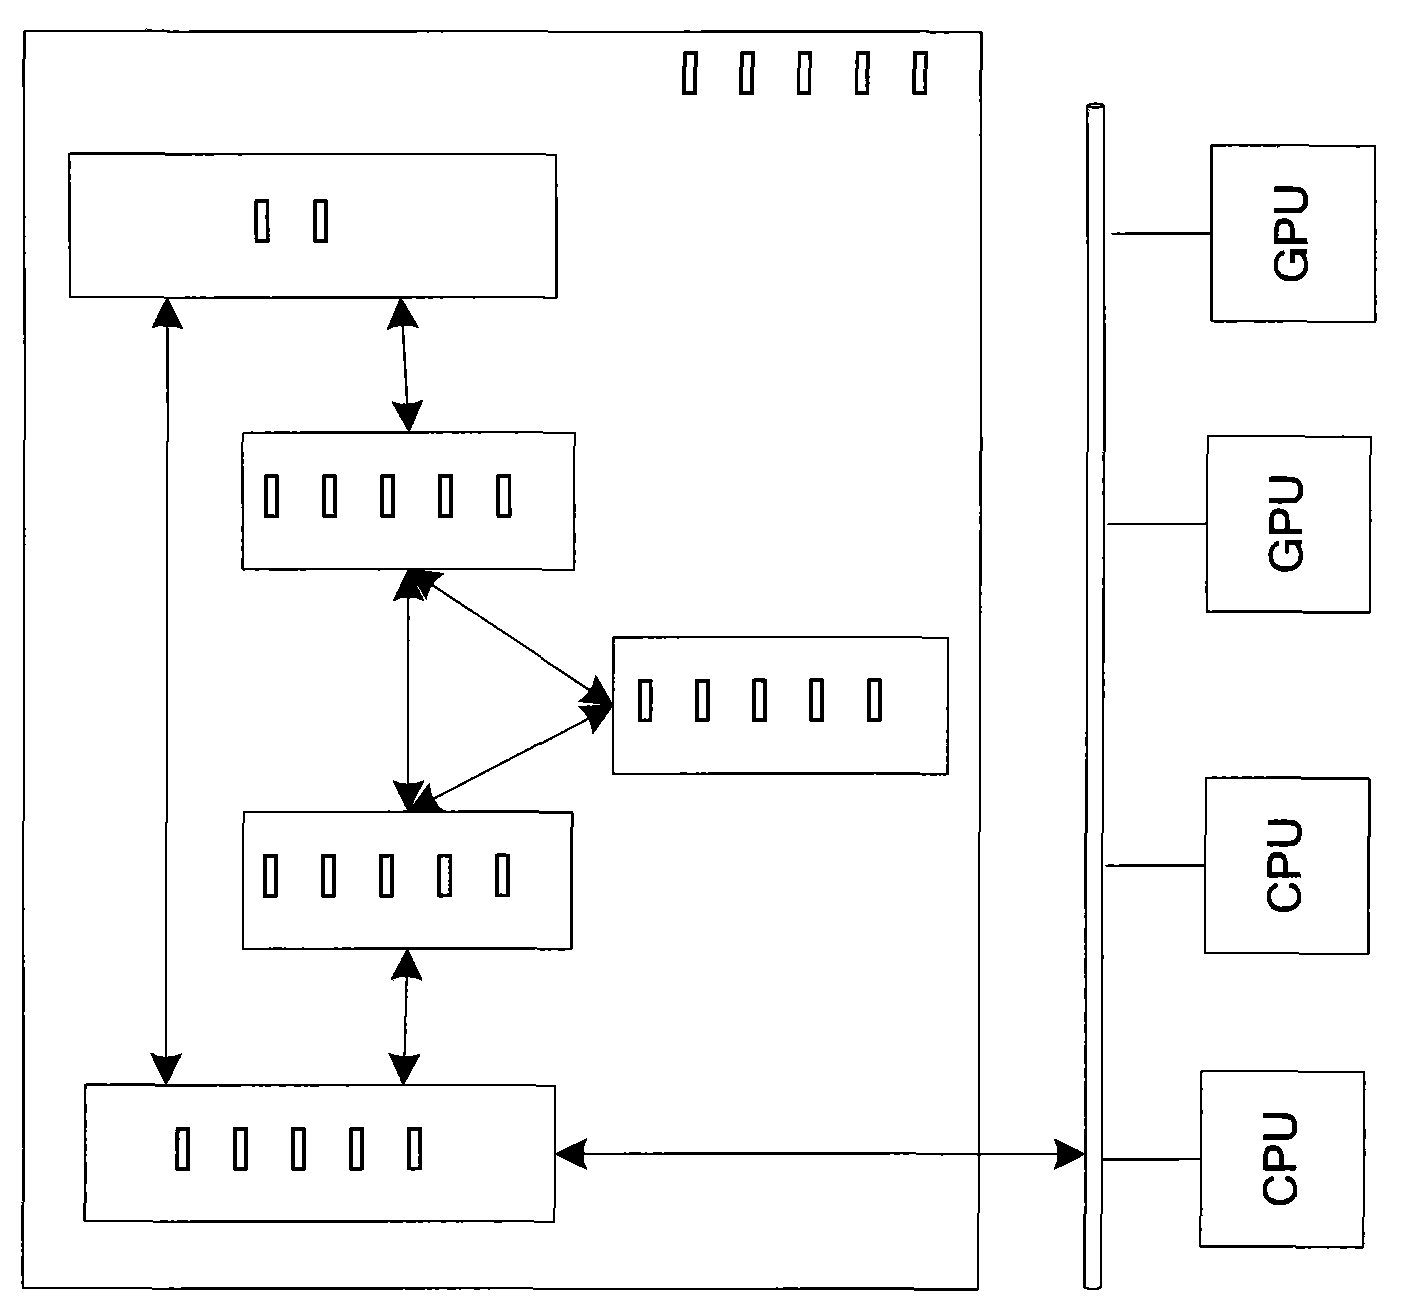 Method for sharing stream memory of heterogeneous multi-processor